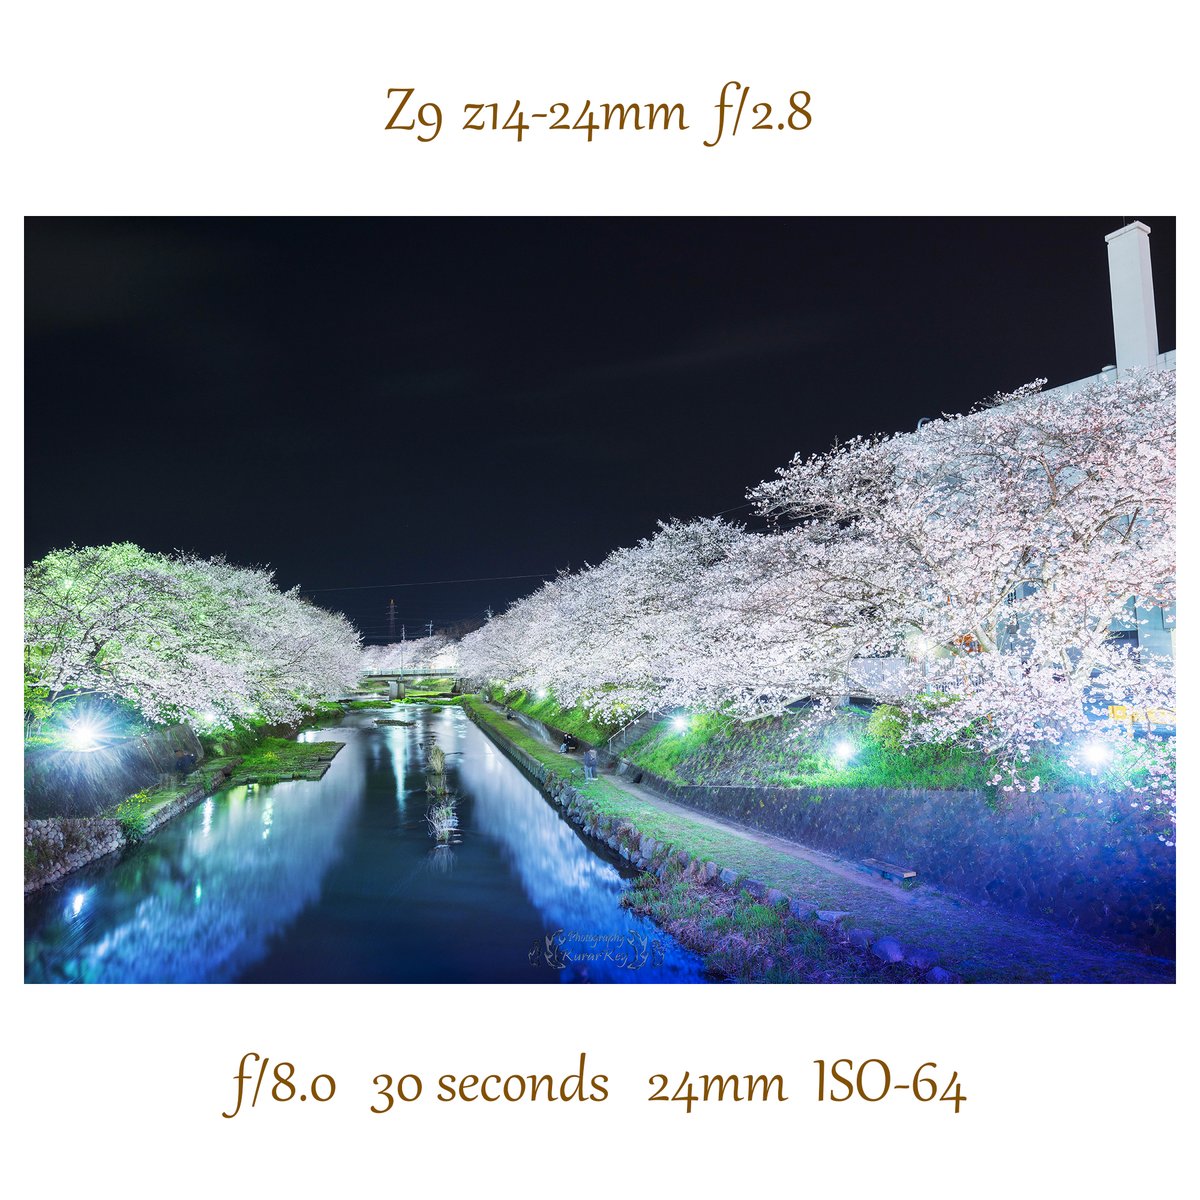 再現像 #桜 #サクラ #ソメイヨシノ #桜 #サクラ #春 #日本 #山口県 #美祢市 #自然 #厚狭川 #美祢市インスタ部 #東京カメラ部 #写真好きと繋がりたい #ファインダー越しの私の世界 #Japan #CherryBlossoms #spring #Yamaguchi #Mine #lovers_nippon #yamaguchiiitoko